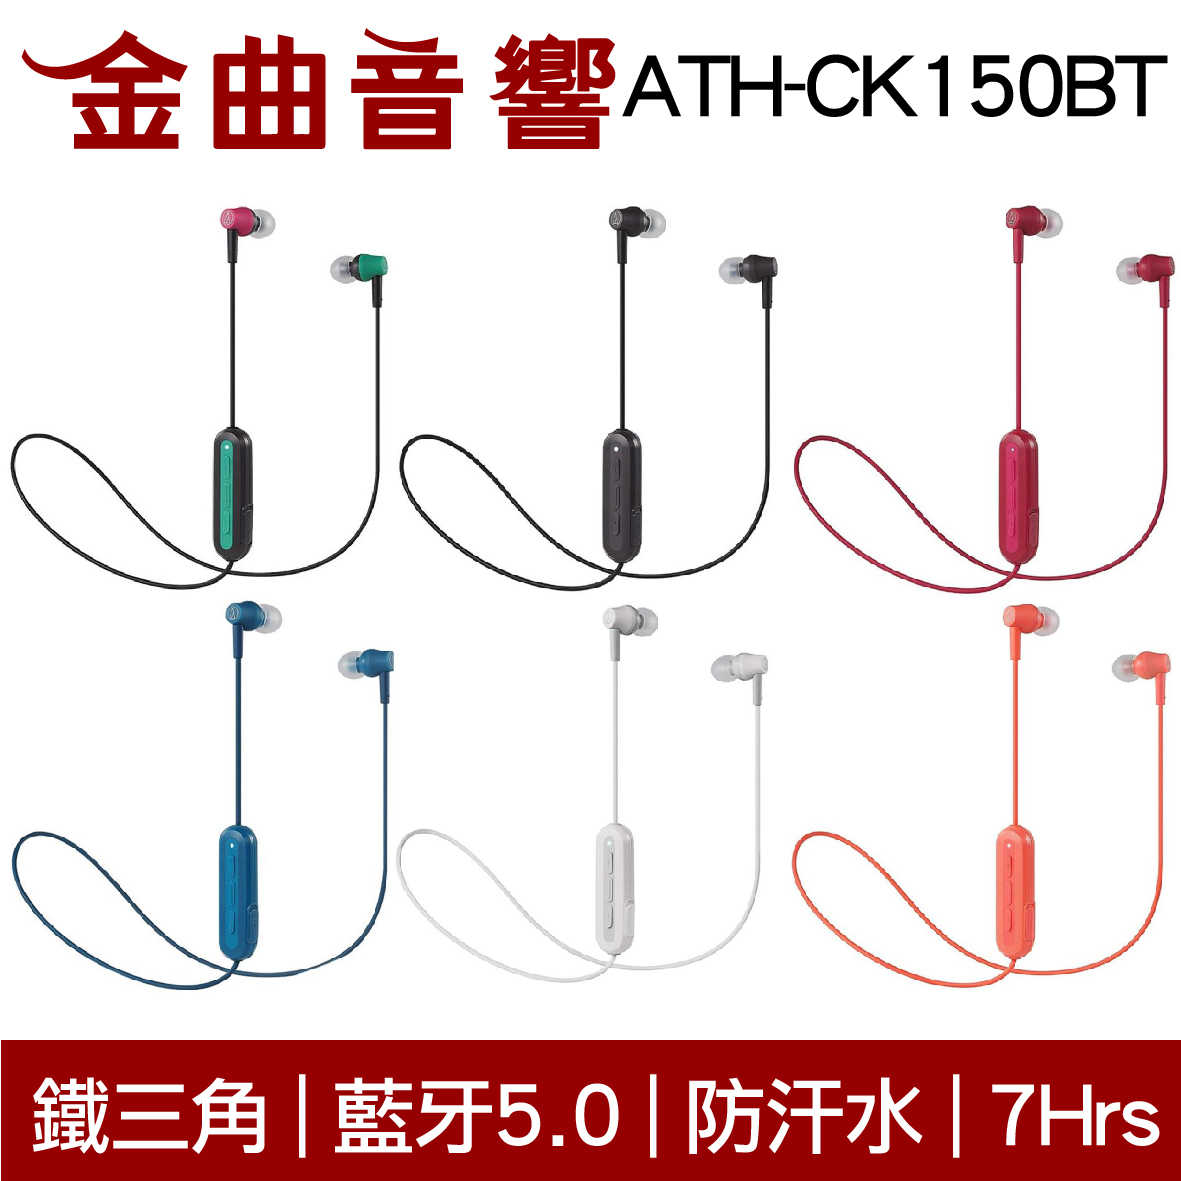 鐵三角 ATH-CK150BT 白色 可通話 無線 藍牙 耳道式耳機 | 金曲音響